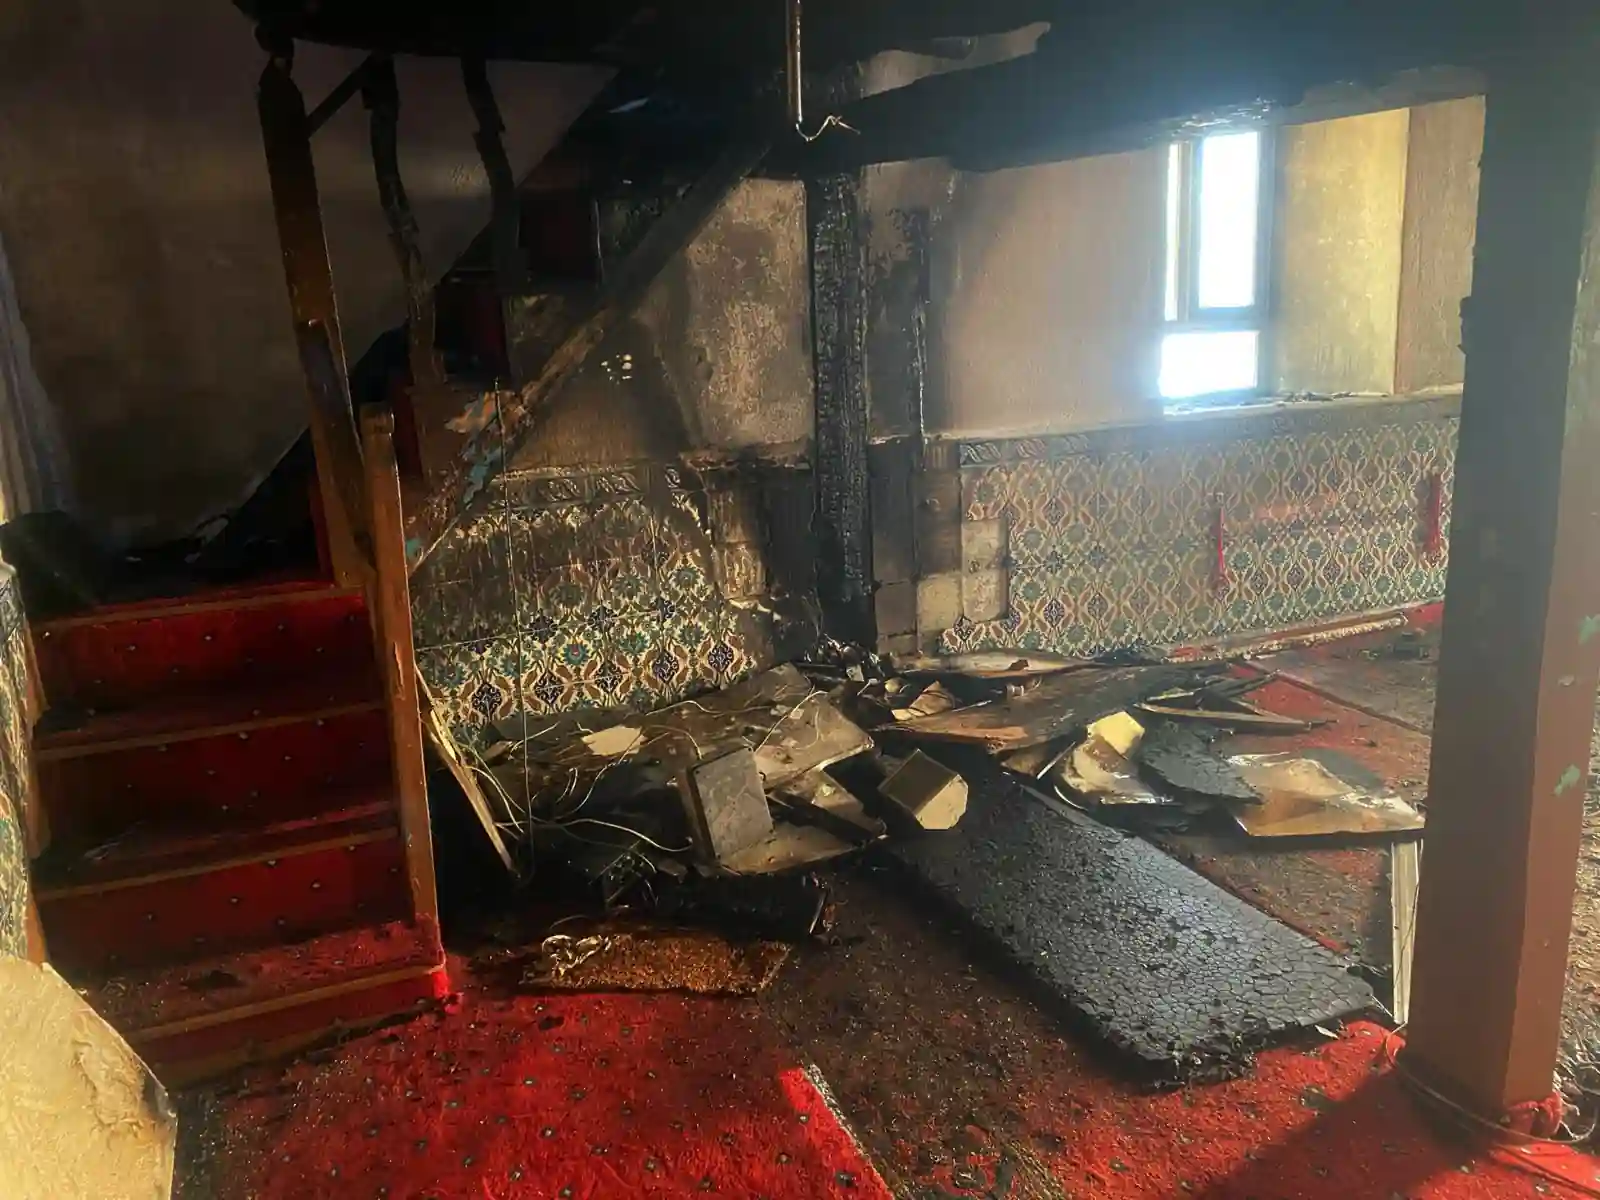 Kütahya'nın Aslanapa ilçesinde, ahşap bir camide meydana gelen yangın, itfaiye ve jandarma ekiplerinin müdahalesiyle kontrol altına alındı.